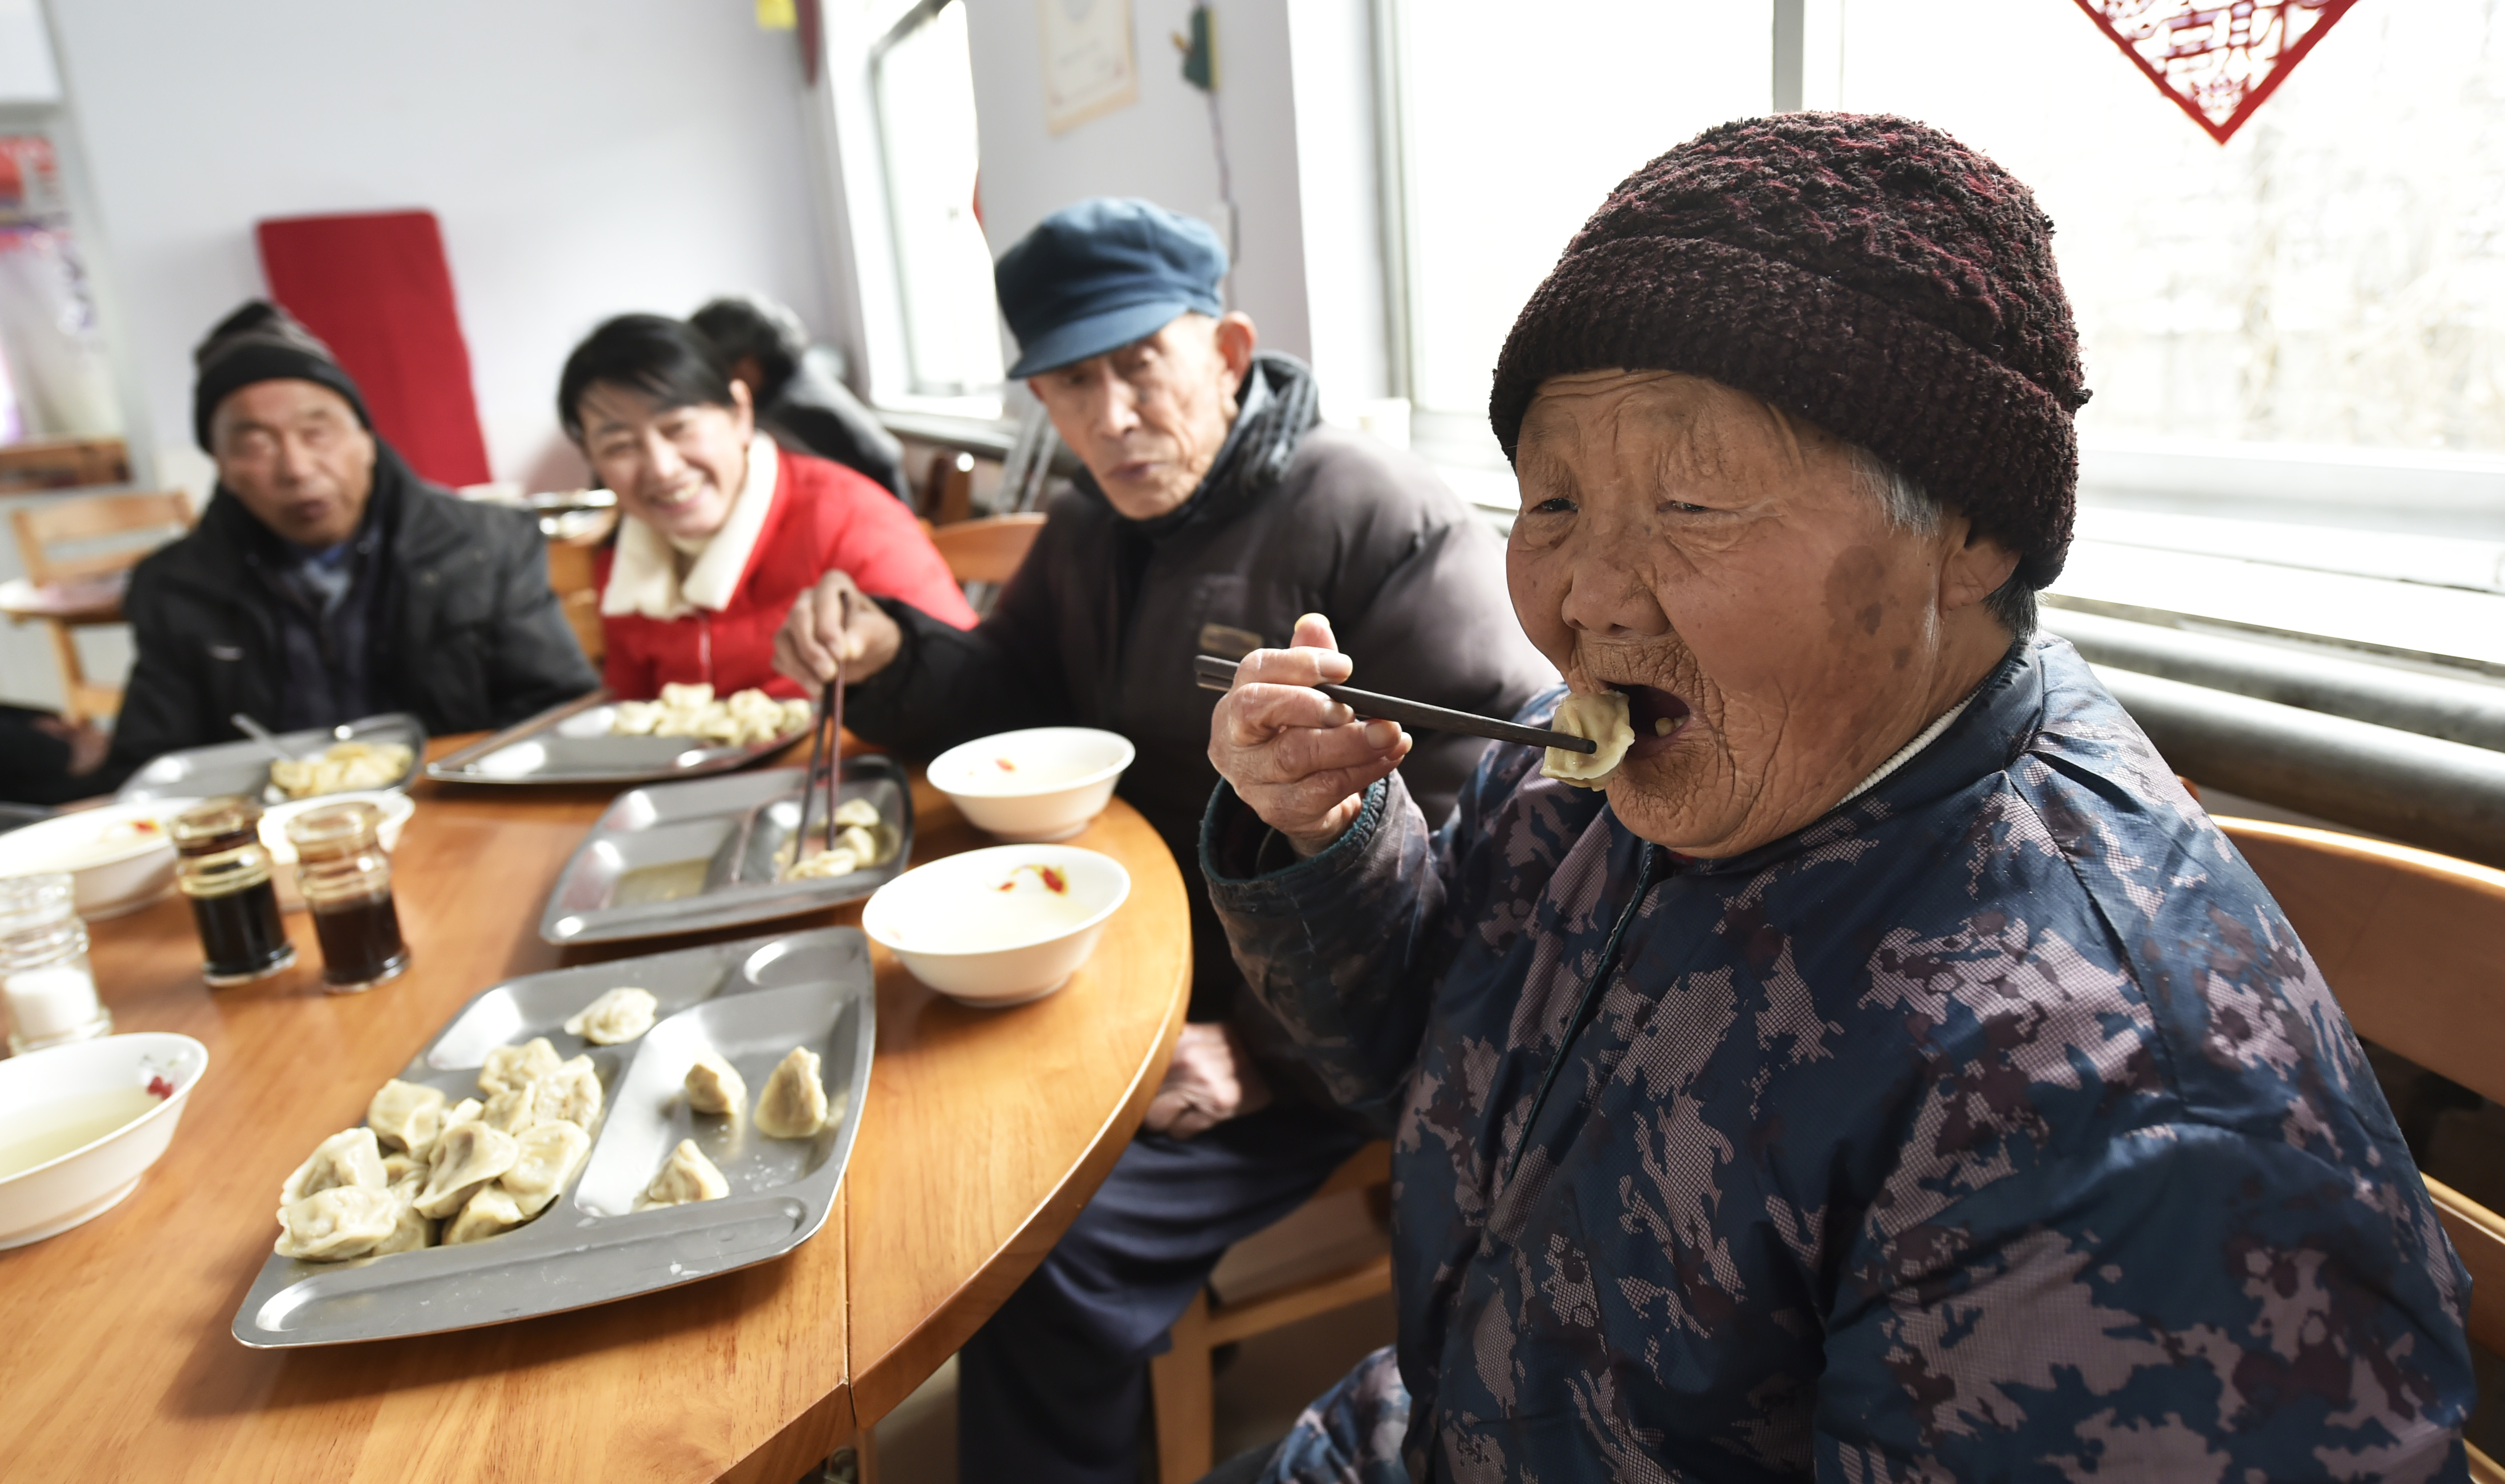 2月3日,山东省邹平市明集镇祥和敬老院的老人在吃饺子